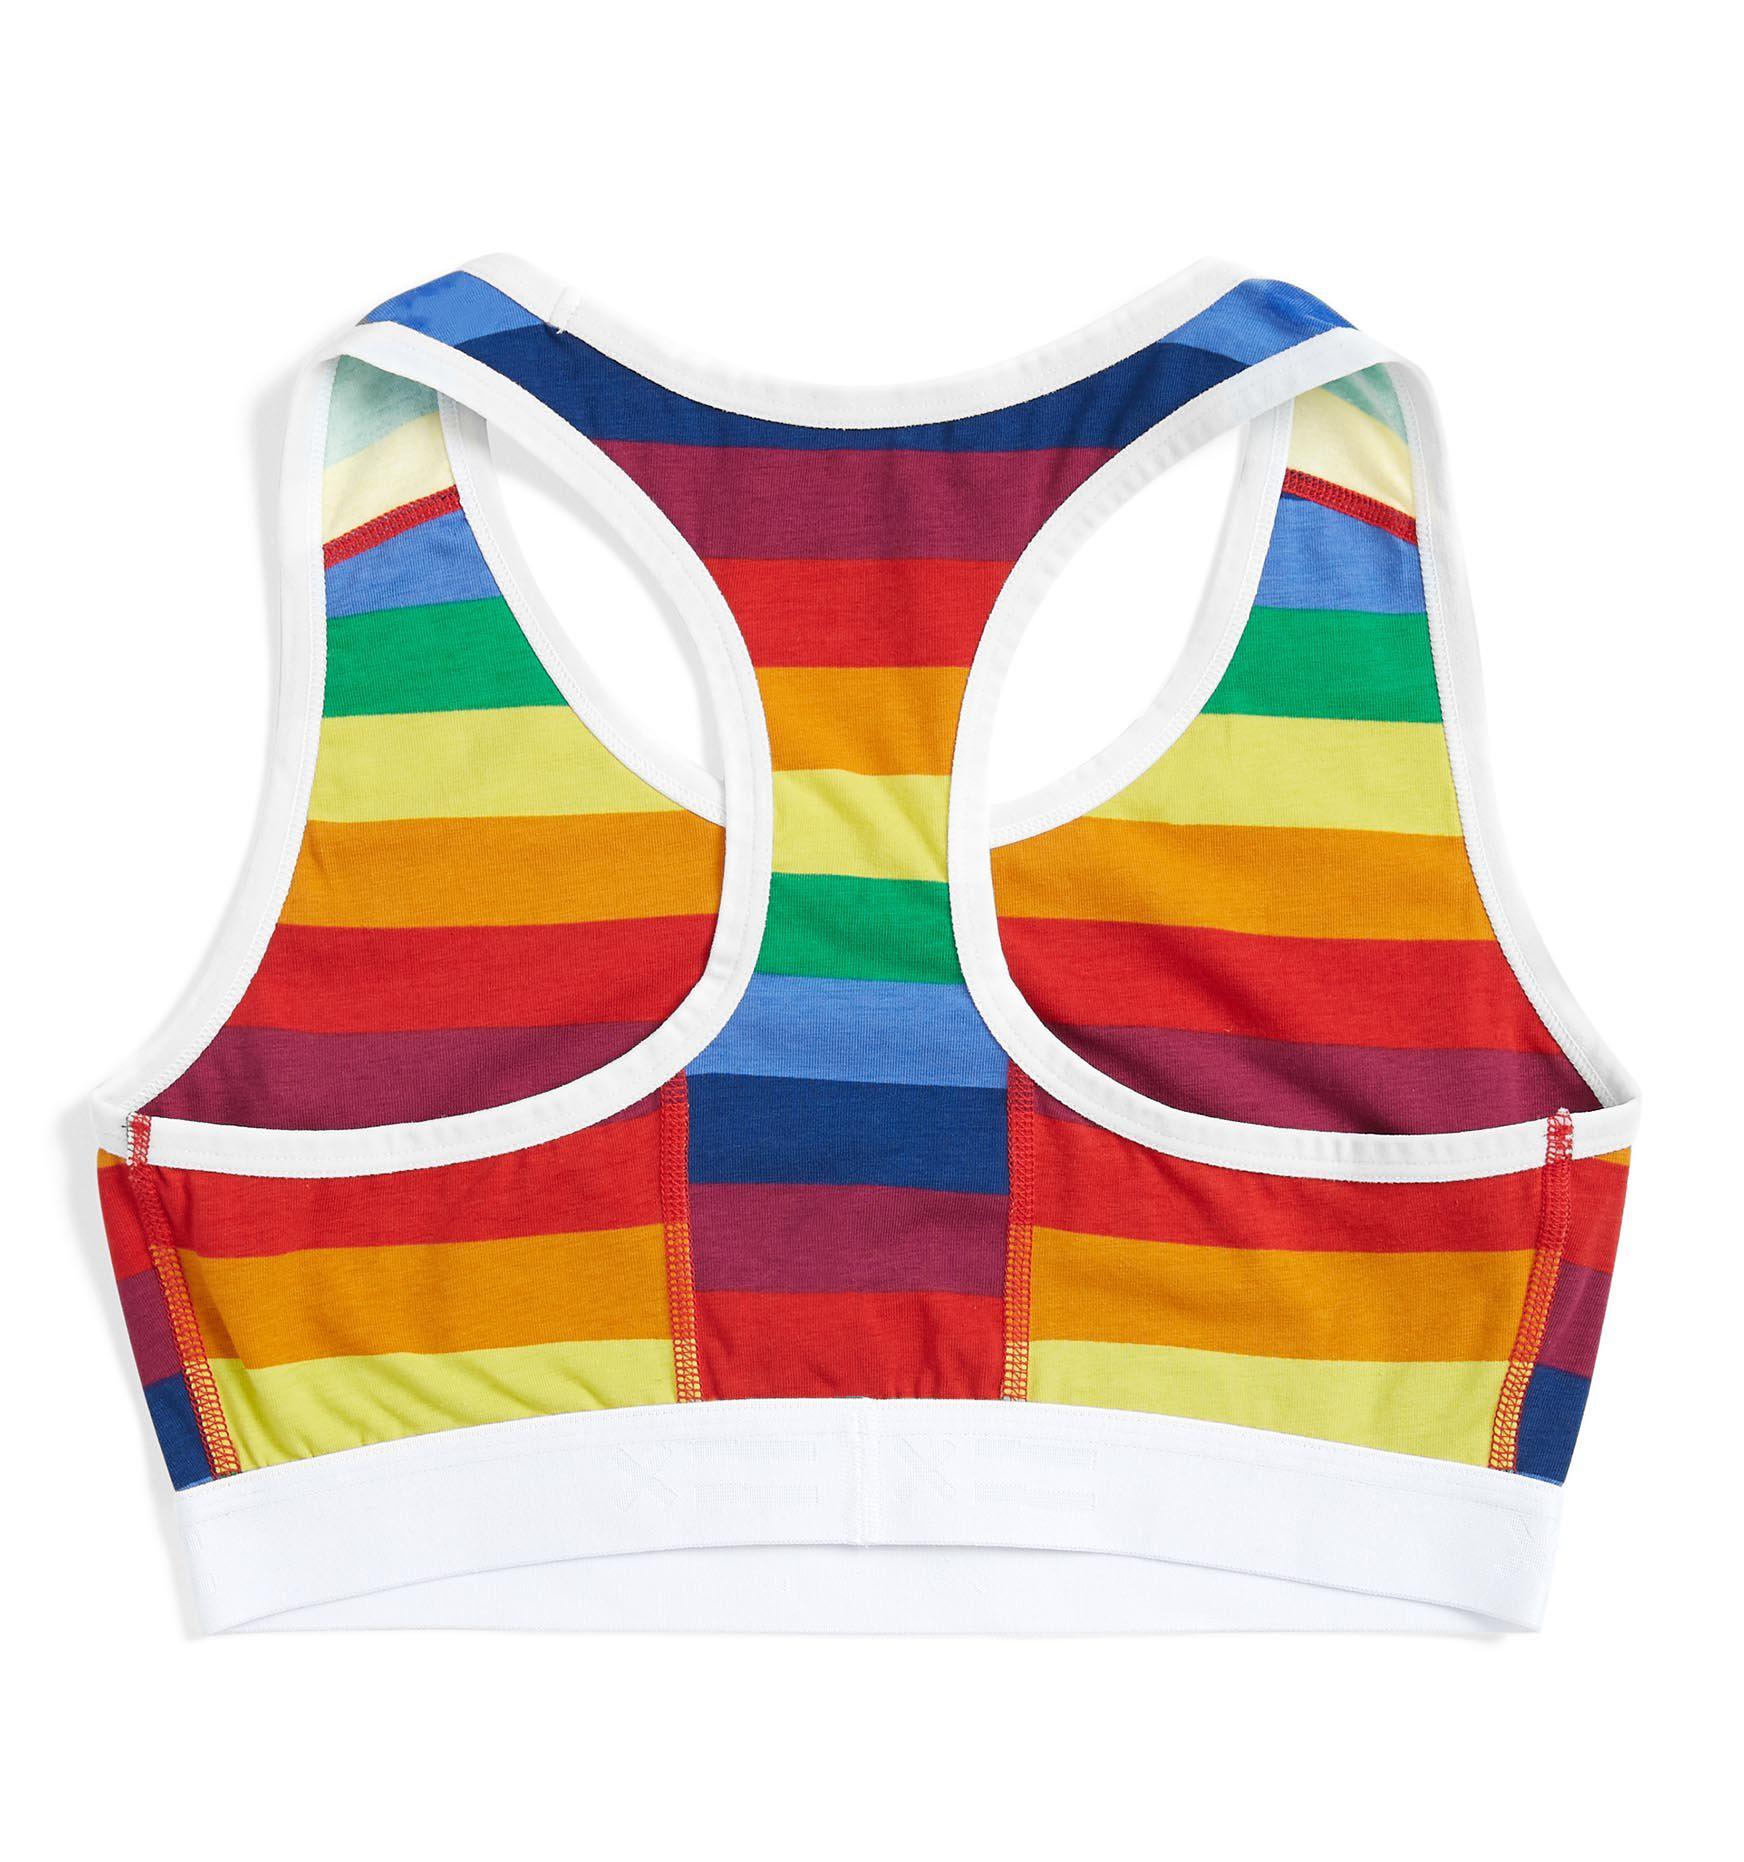 Tomboy X Rainbow Pride Bra unlined essentials sports bra Like New size Small